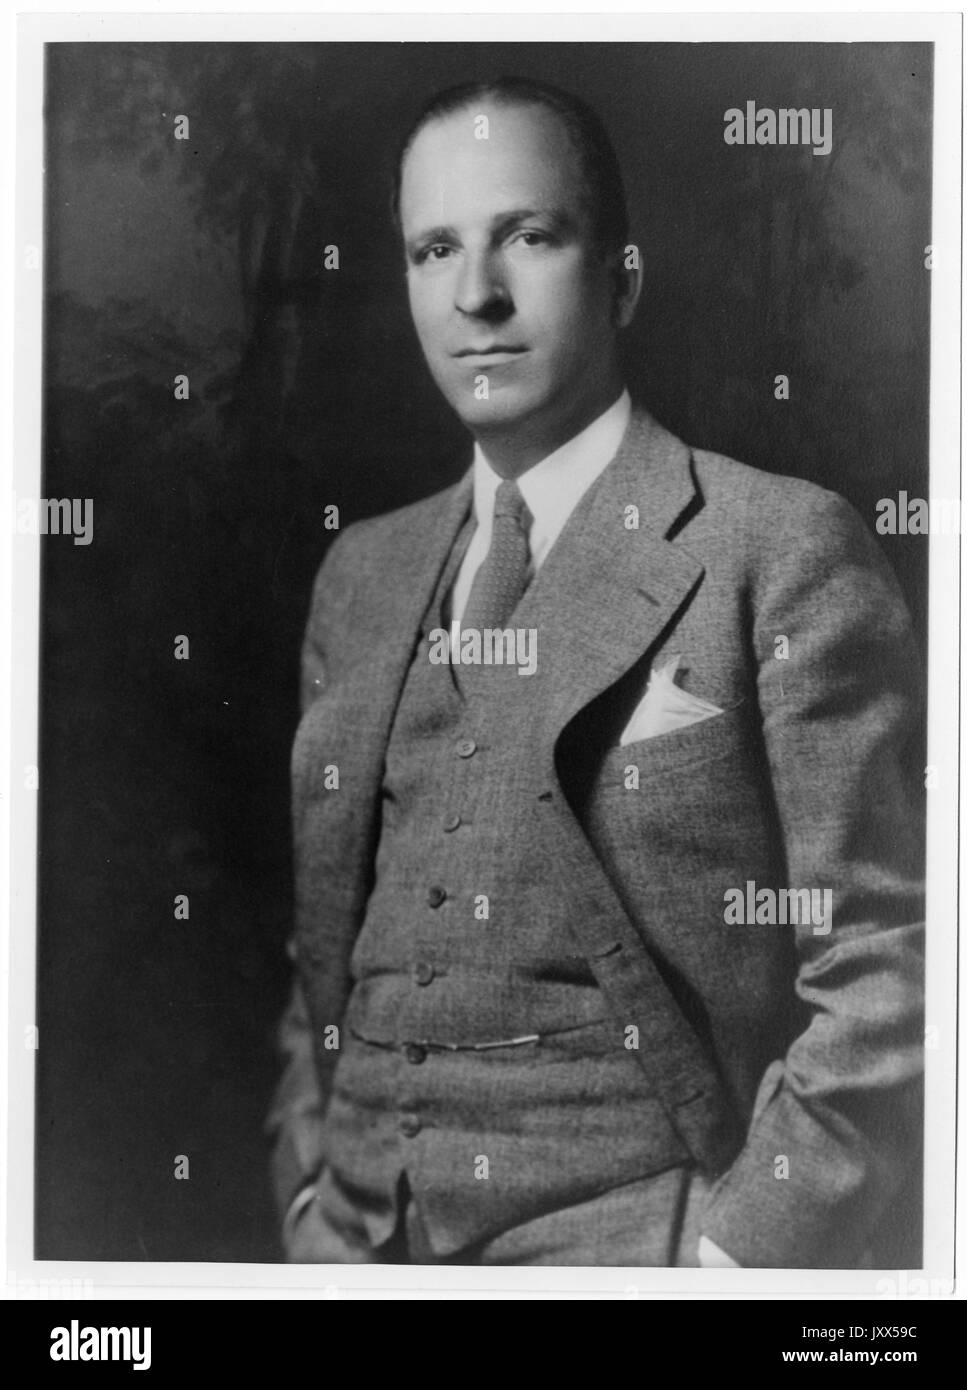 Henry Scott baker, ritratto fotografia, in piedi, fianchi, full face, 1940. Foto Stock